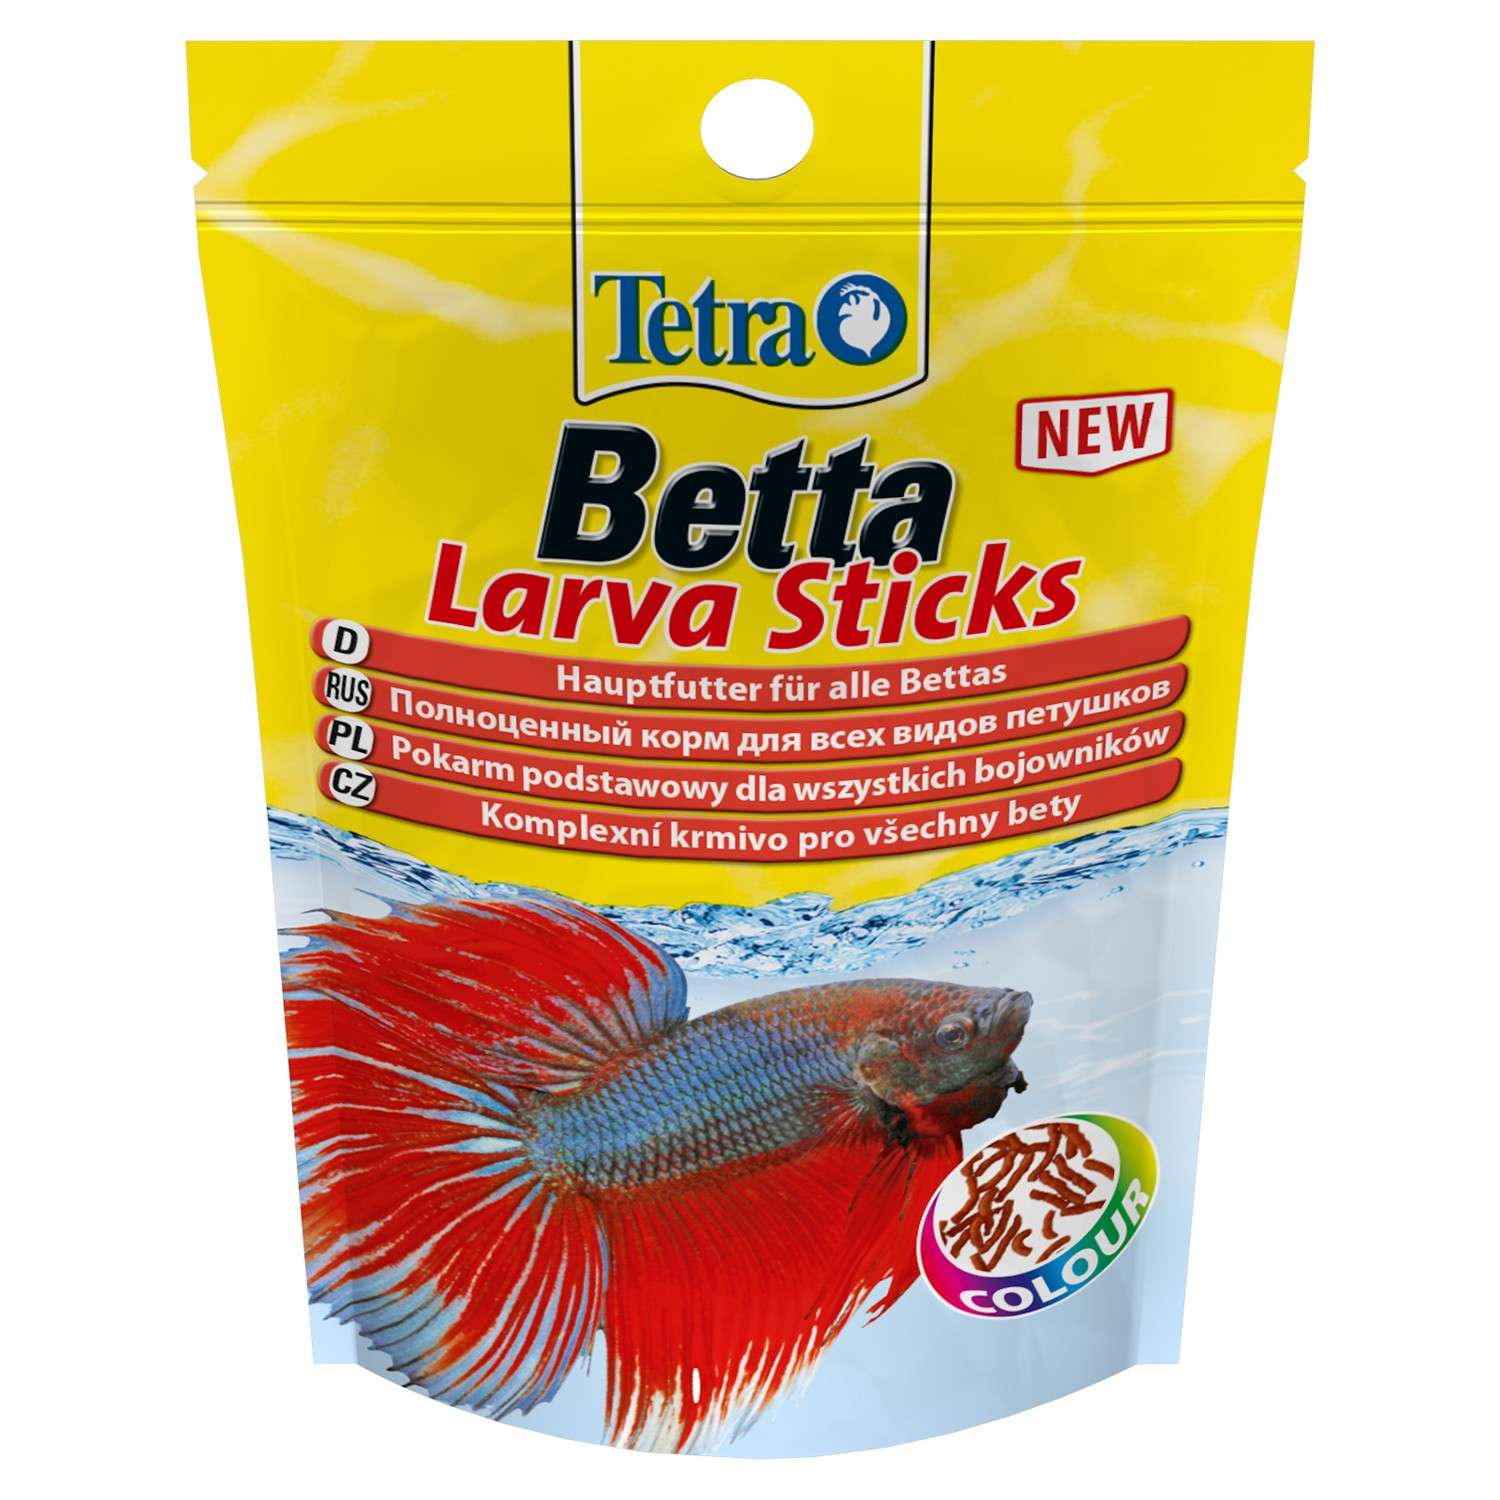 Корм для рыб Tetra 5г Betta LarvaSticks для петушков и других лабиринтовых рыб в форме мотыля - фото 2